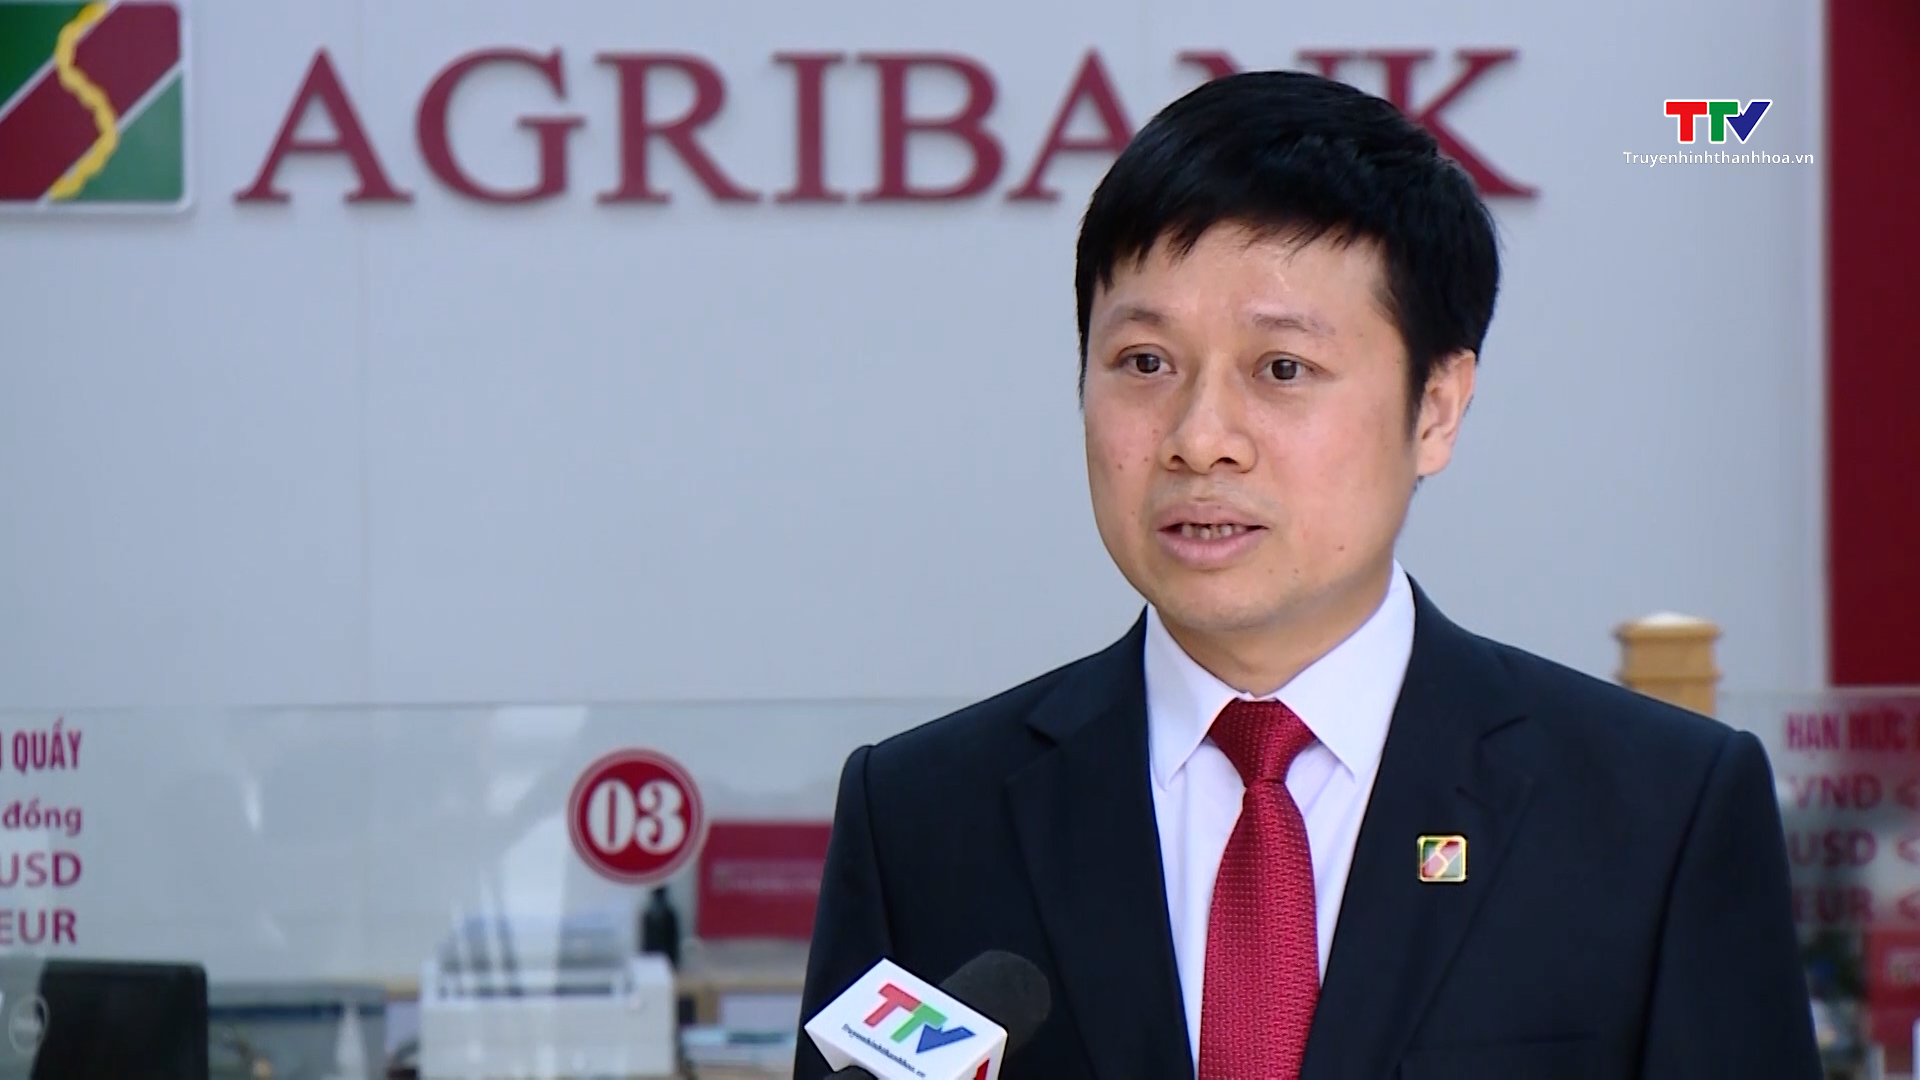 Agribank Nam Thanh Hoá ưu tiên hỗ trợ vốn cho nền kinh tế- Ảnh 2.